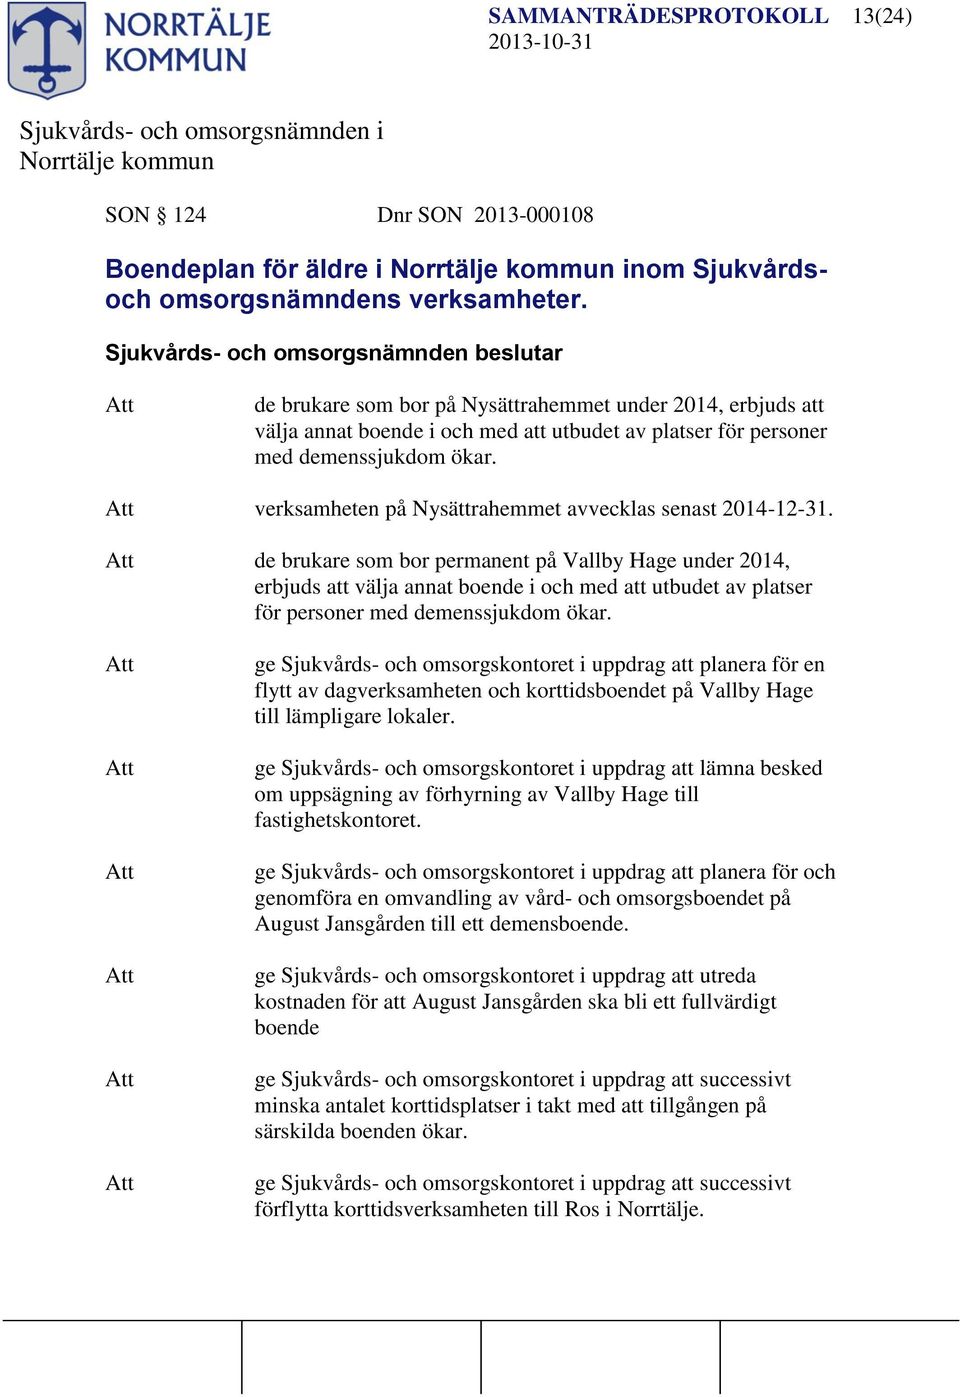 verksamheten på Nysättrahemmet avvecklas senast 2014-12-31.